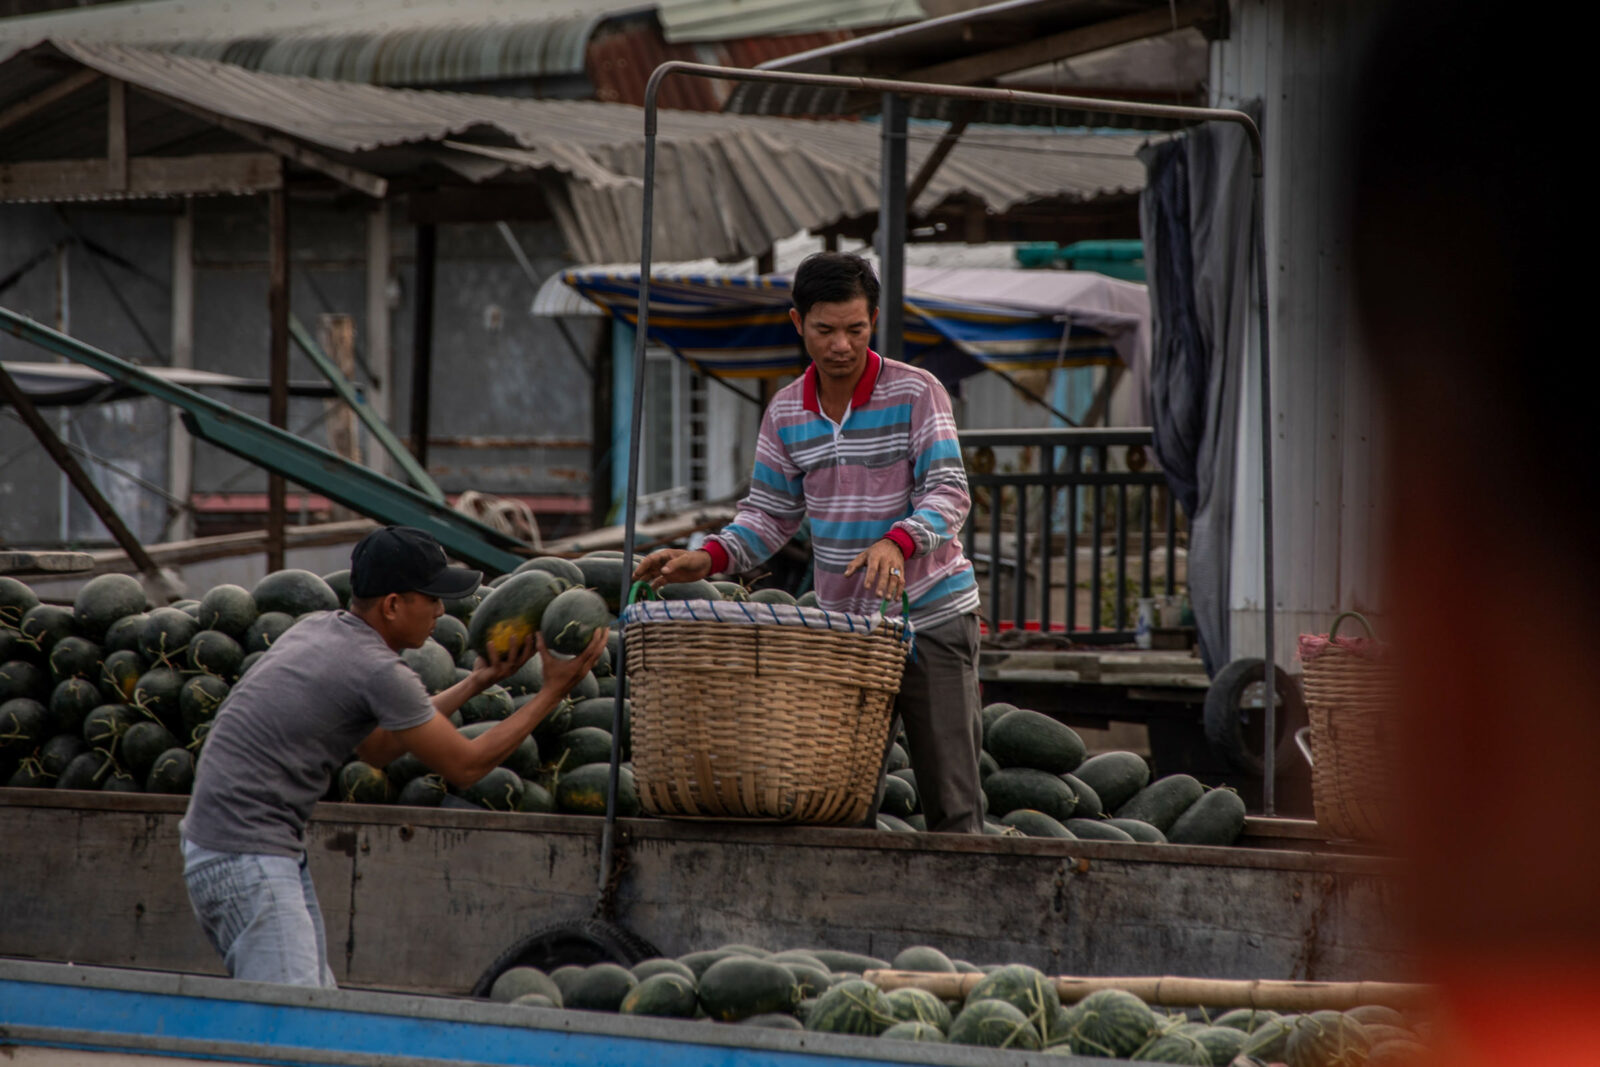 händler auf booten in vietnam